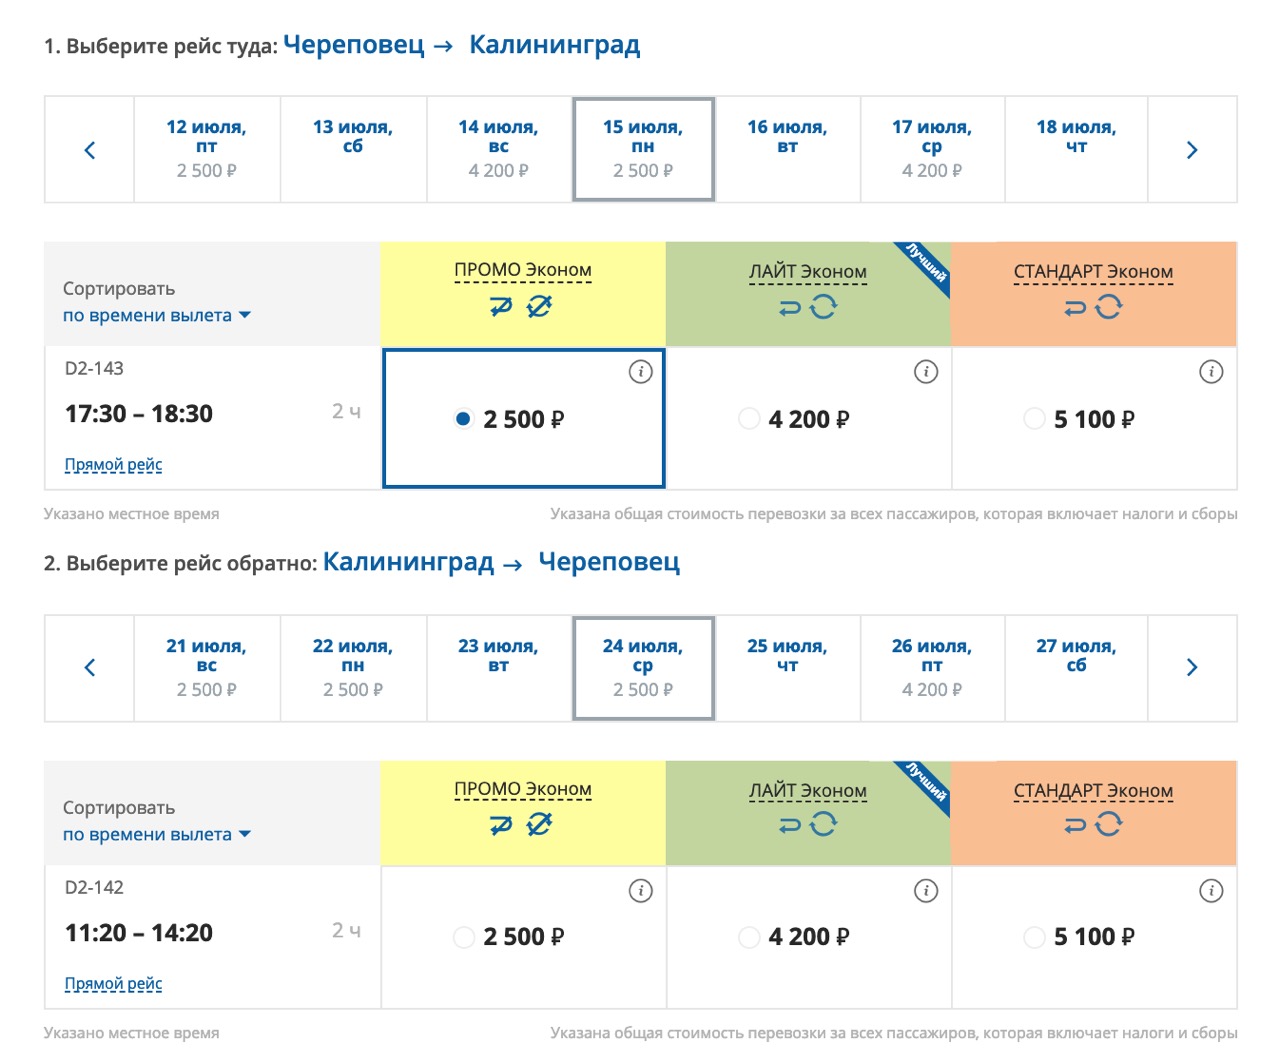 Сколько стоит билет новосибирск калининград самолетом билеты нижневартовск махачкала на самолет прямой рейс